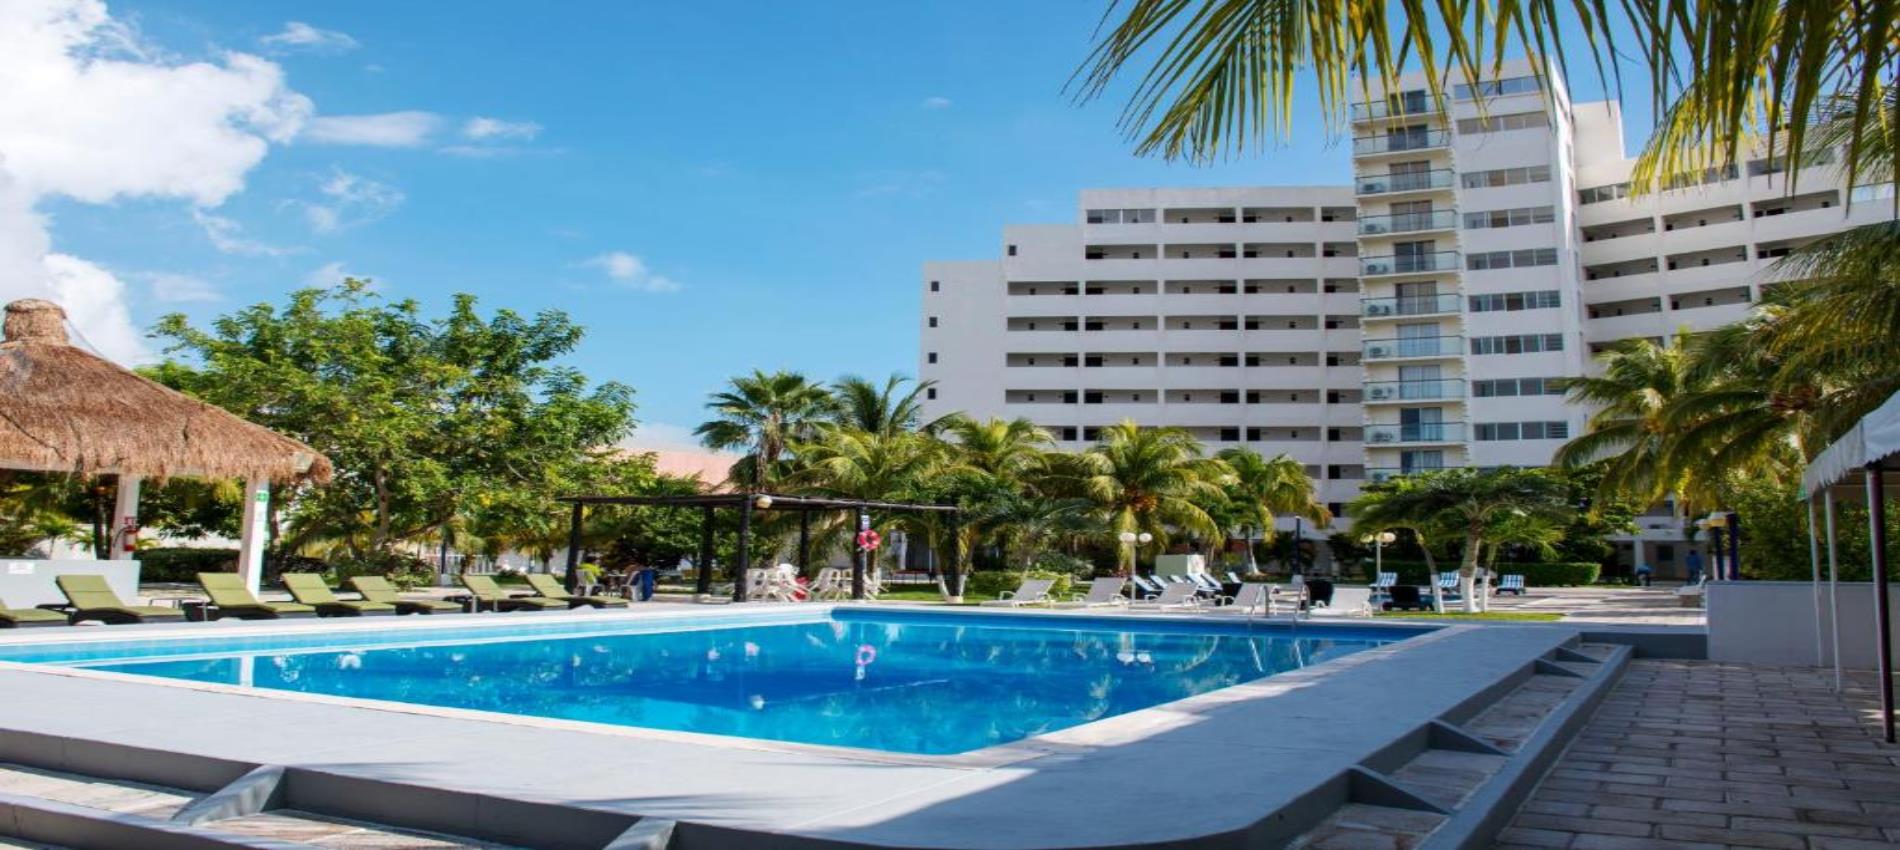 Calypso Cancún | Hoteles en Cancún